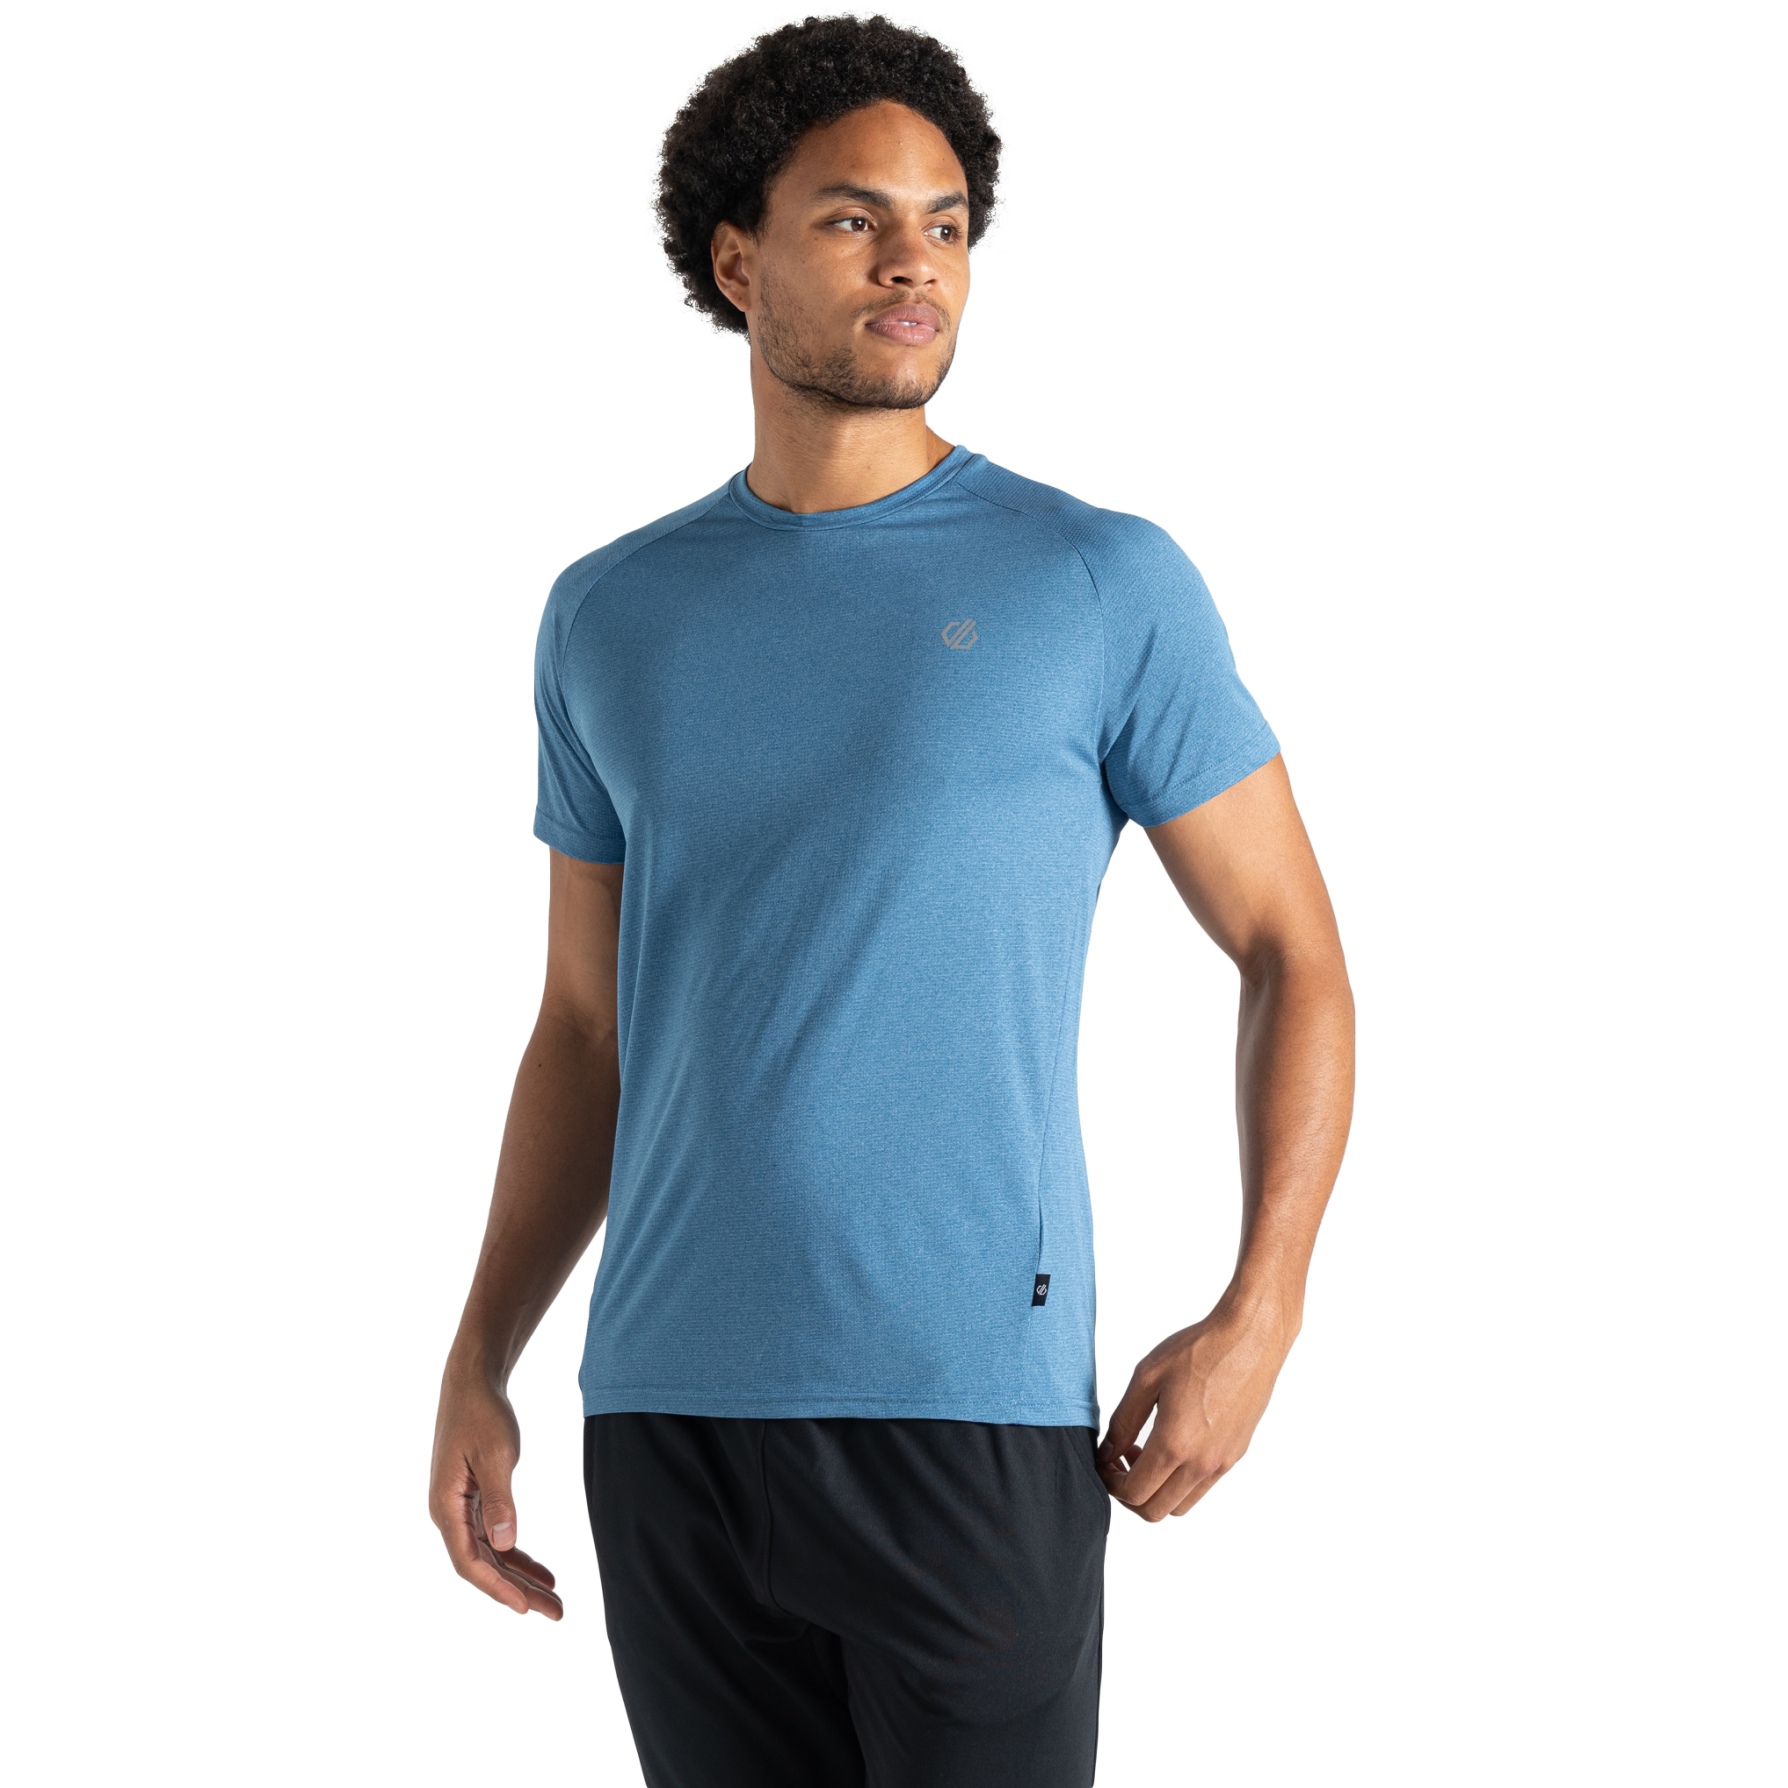 Produktbild von Dare 2b Accelerate T-Shirt Herren - Q3S Coronet Blue Marl